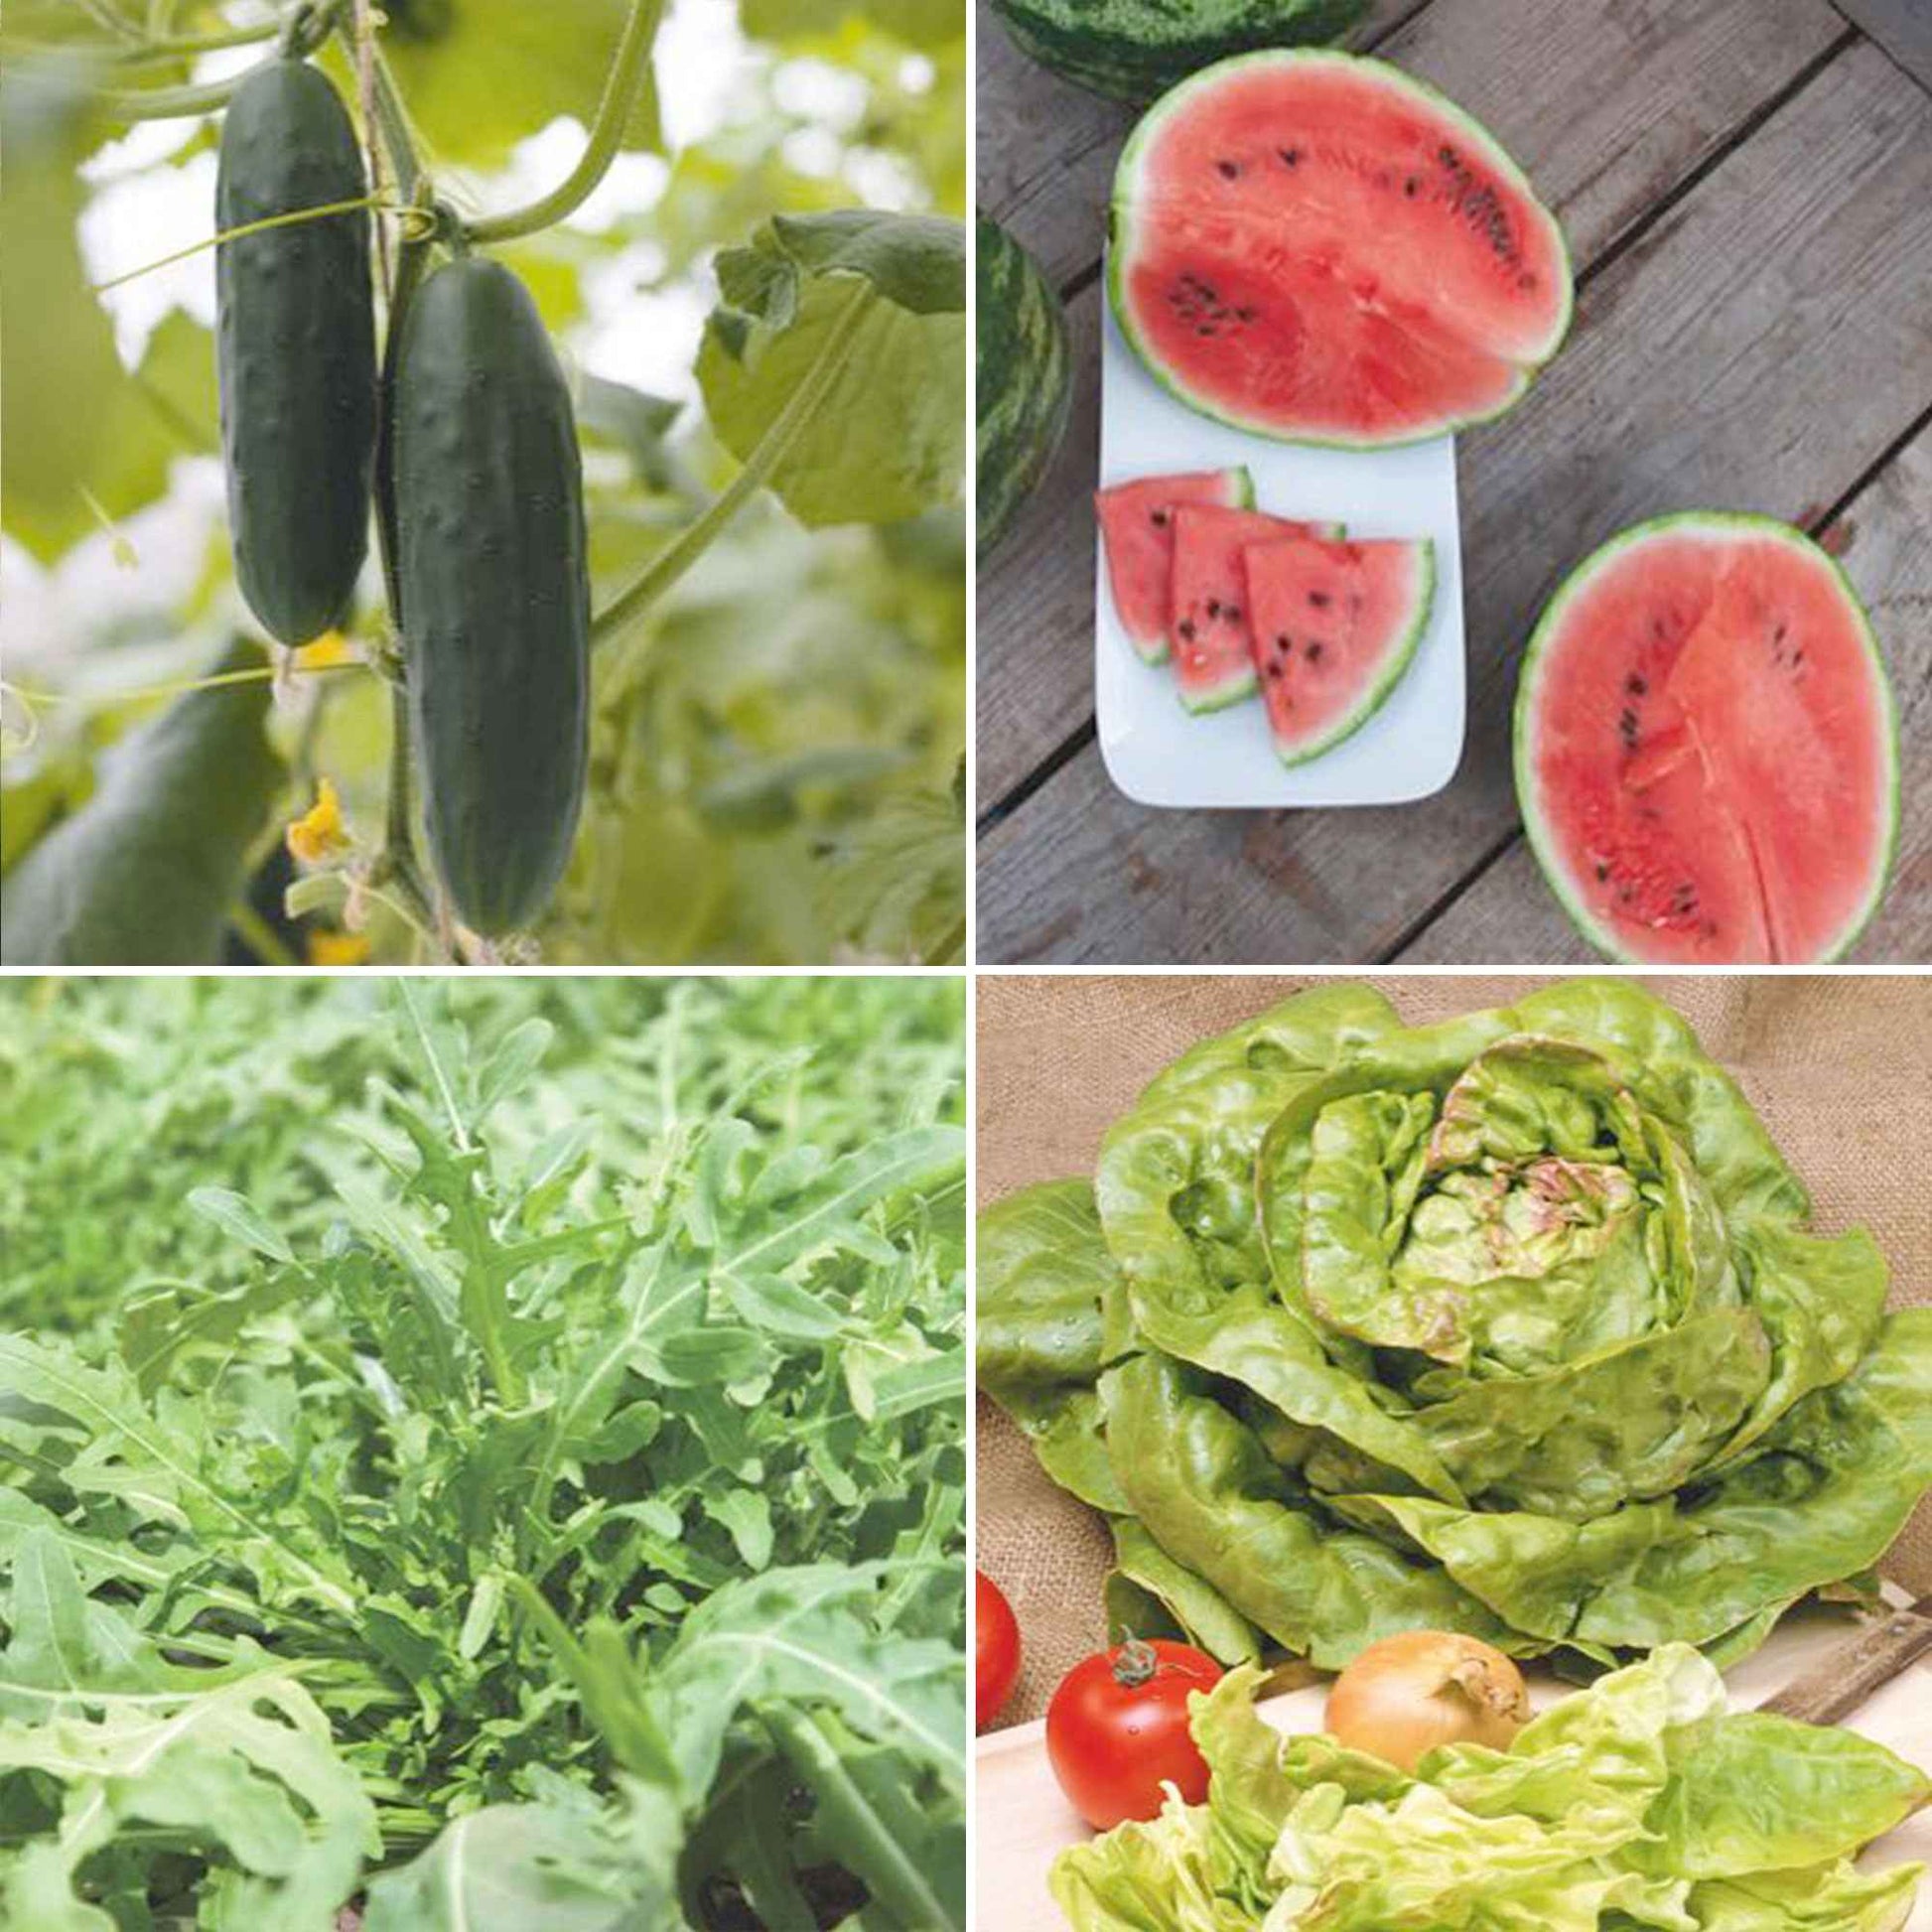 Zomerpakket Zalige Zomer - Biologische groentezaden, kruidenzaden, fruitzaden - Doe-het-zelf-groentepakket